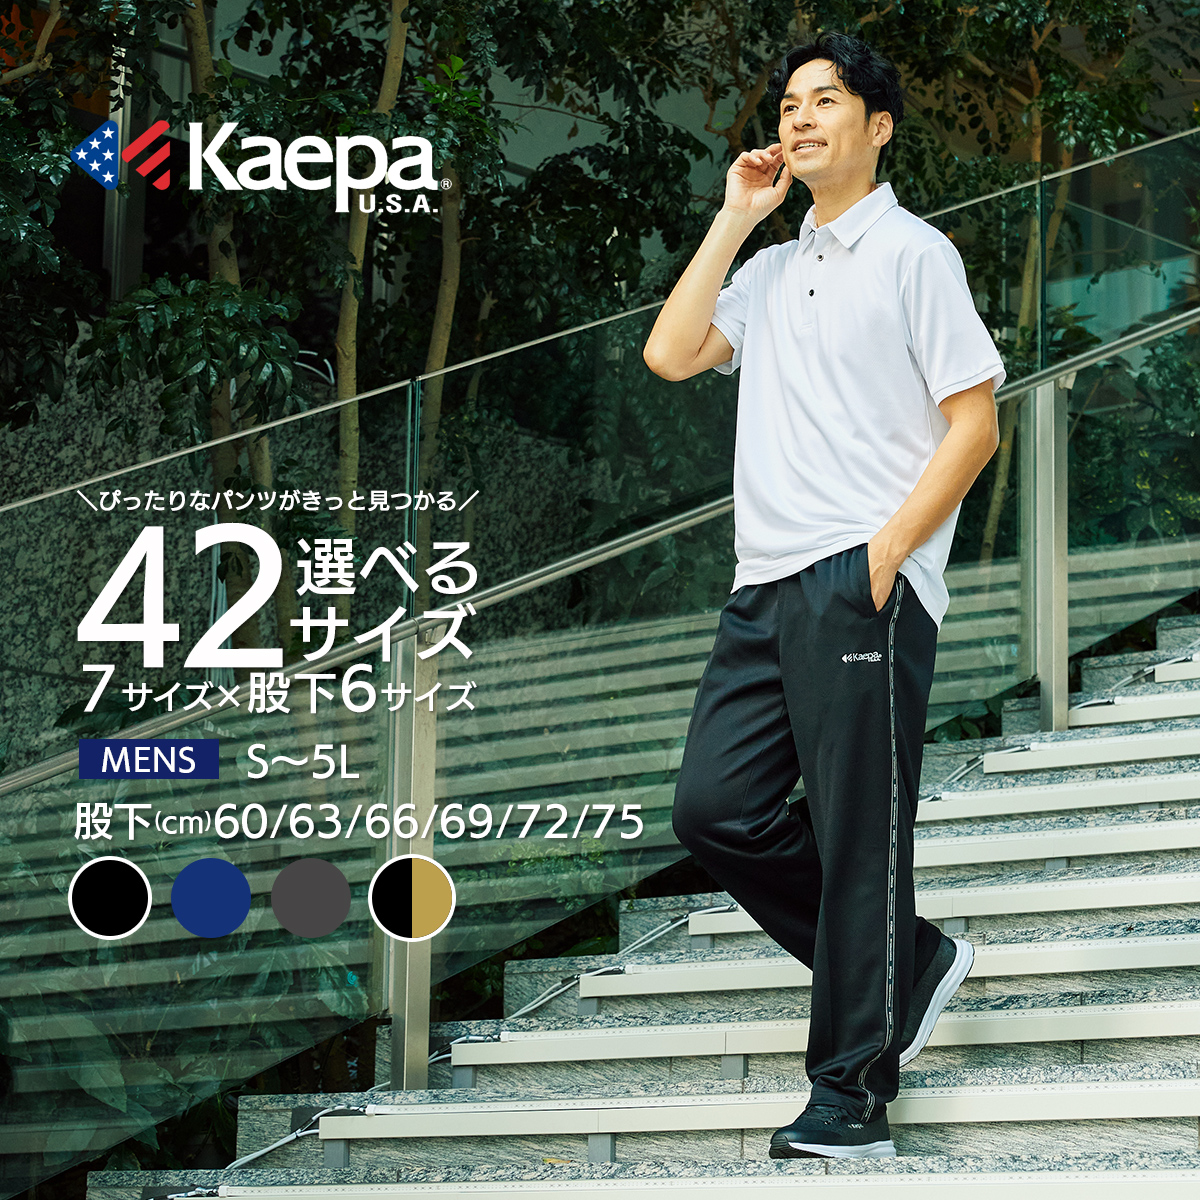 Kaepa Kei pa length джерси мужской можно выбрать длина ног длина ног 63cm 66cm 69cm 72cm 75cm большой размер спорт kp365 бесплатная доставка [AP]